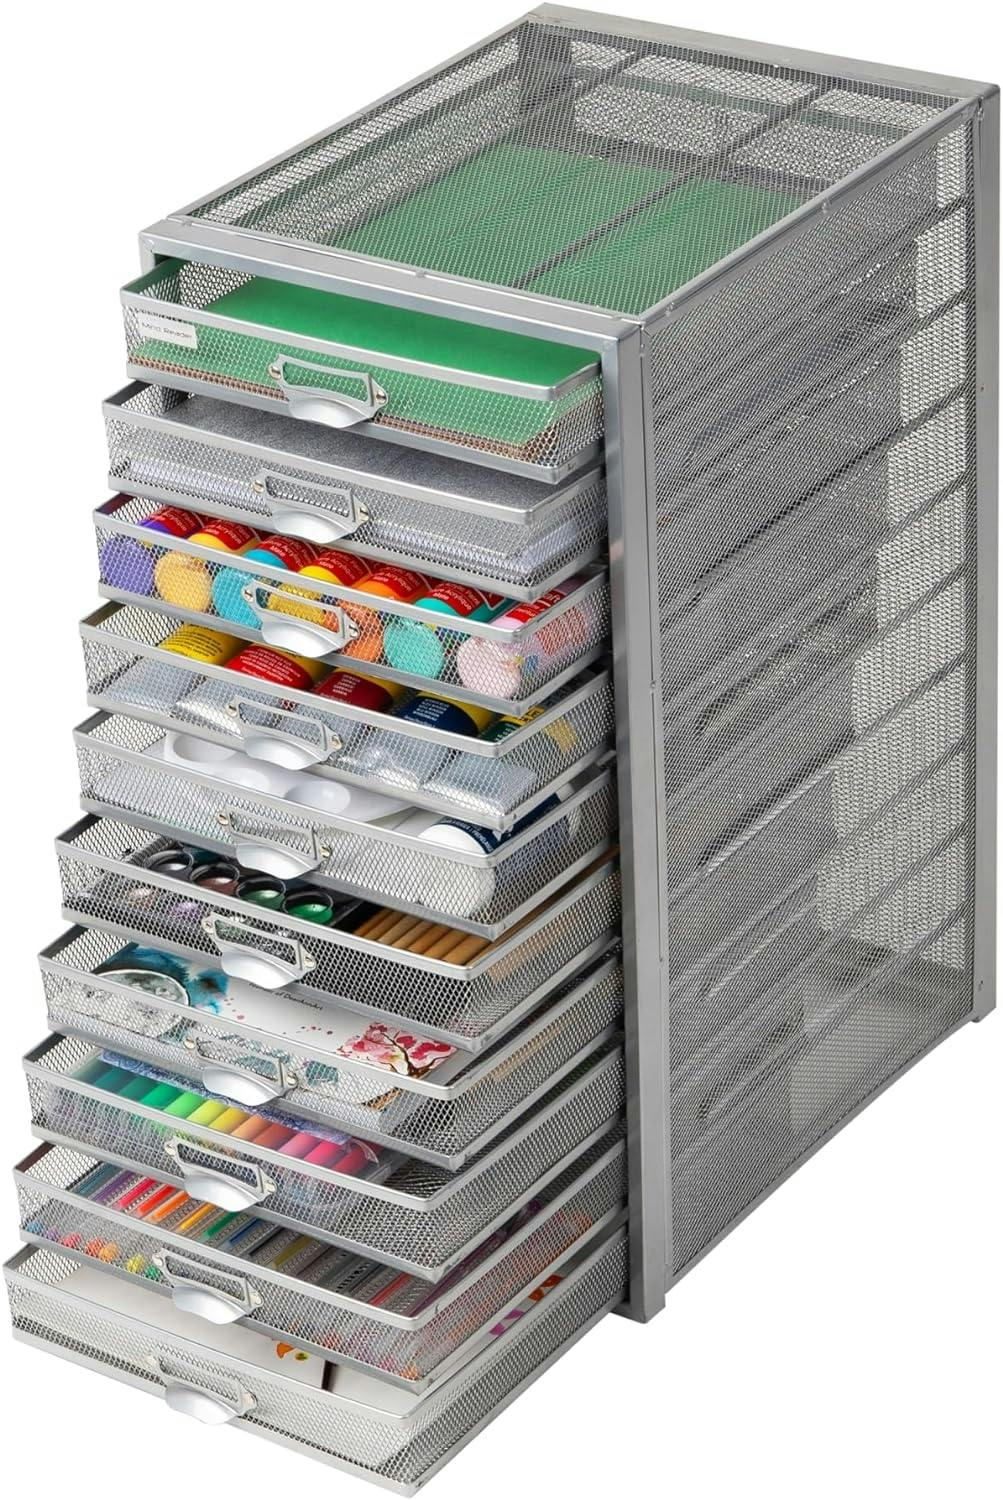 Sleek Silver Metal Mesh 10-Drawer Desktop Organizer Cabinet